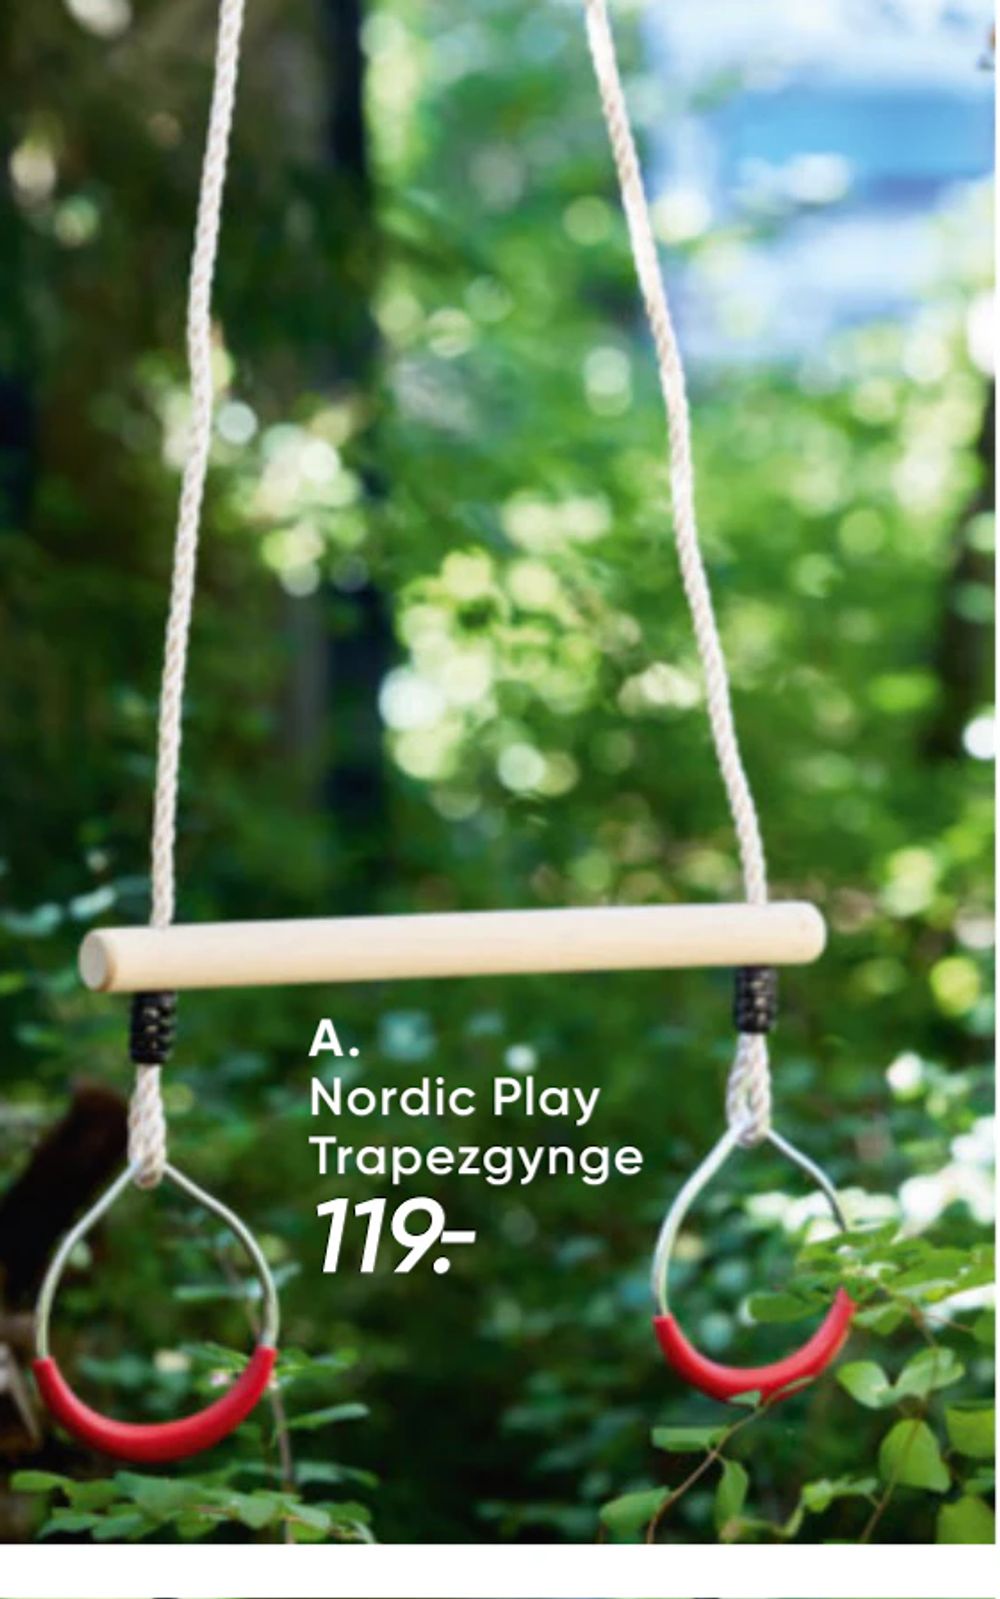 Tilbud på Nordic Play Trapezgynge fra Bilka til 119 kr.